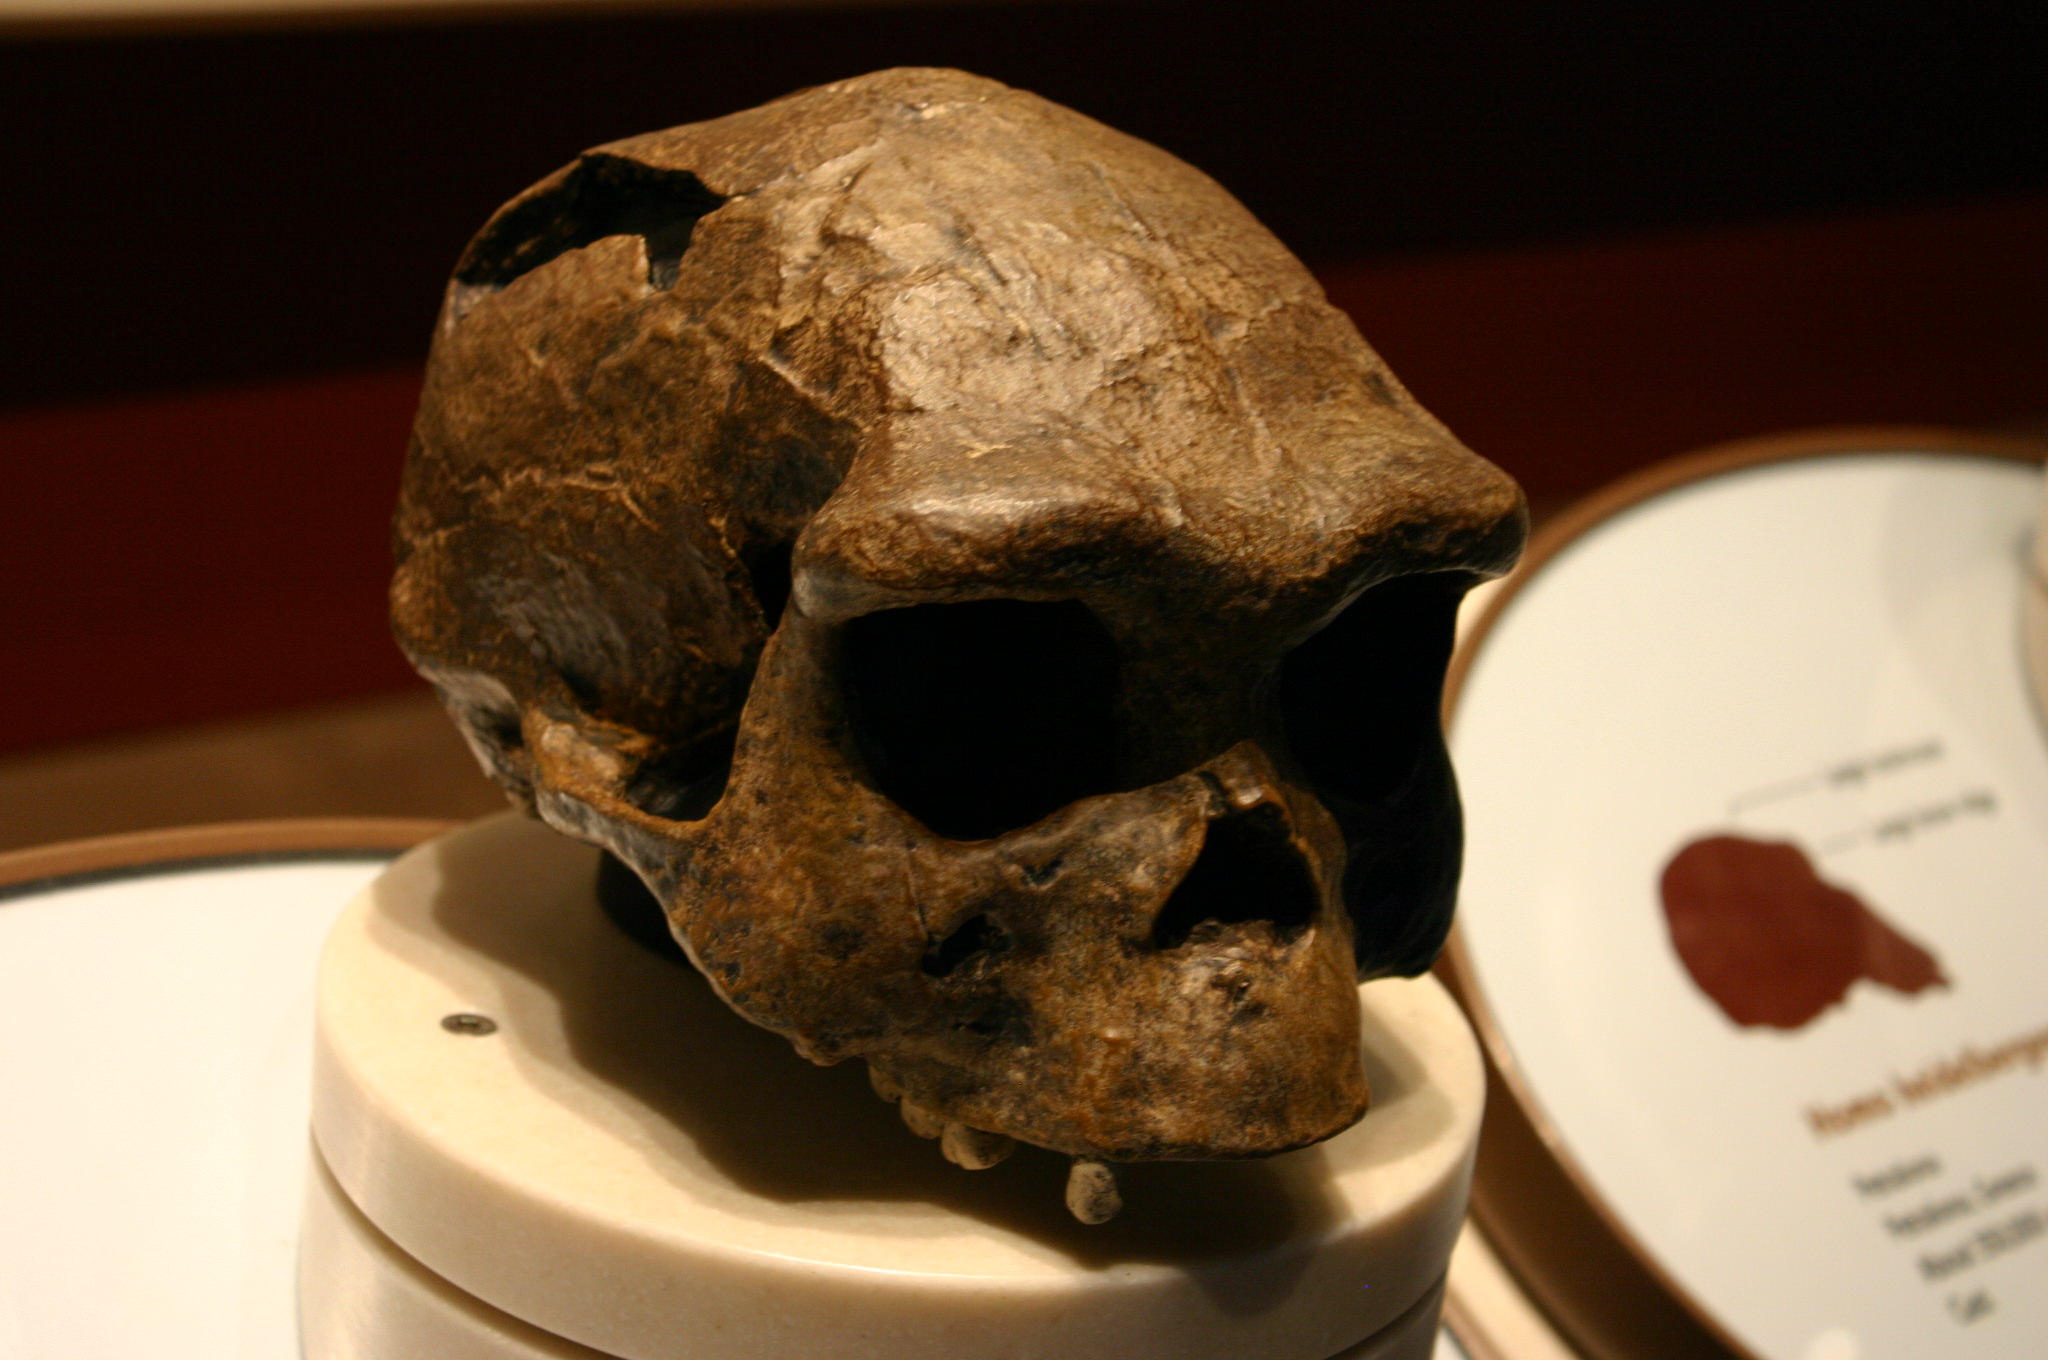 Bộ xương từ hang động Sima de los Huesos đã được gán cho một loài người đầu tiên được gọi là Homo heidelbergensis. Tuy nhiên, các nhà nghiên cứu cho biết cấu trúc bộ xương tương tự như cấu trúc bộ xương của người Neanderthal - đến mức một số người nói rằng người Sima de los Huesos thực sự là người Neanderthal chứ không phải là đại diện của Homo heidelbergensis.